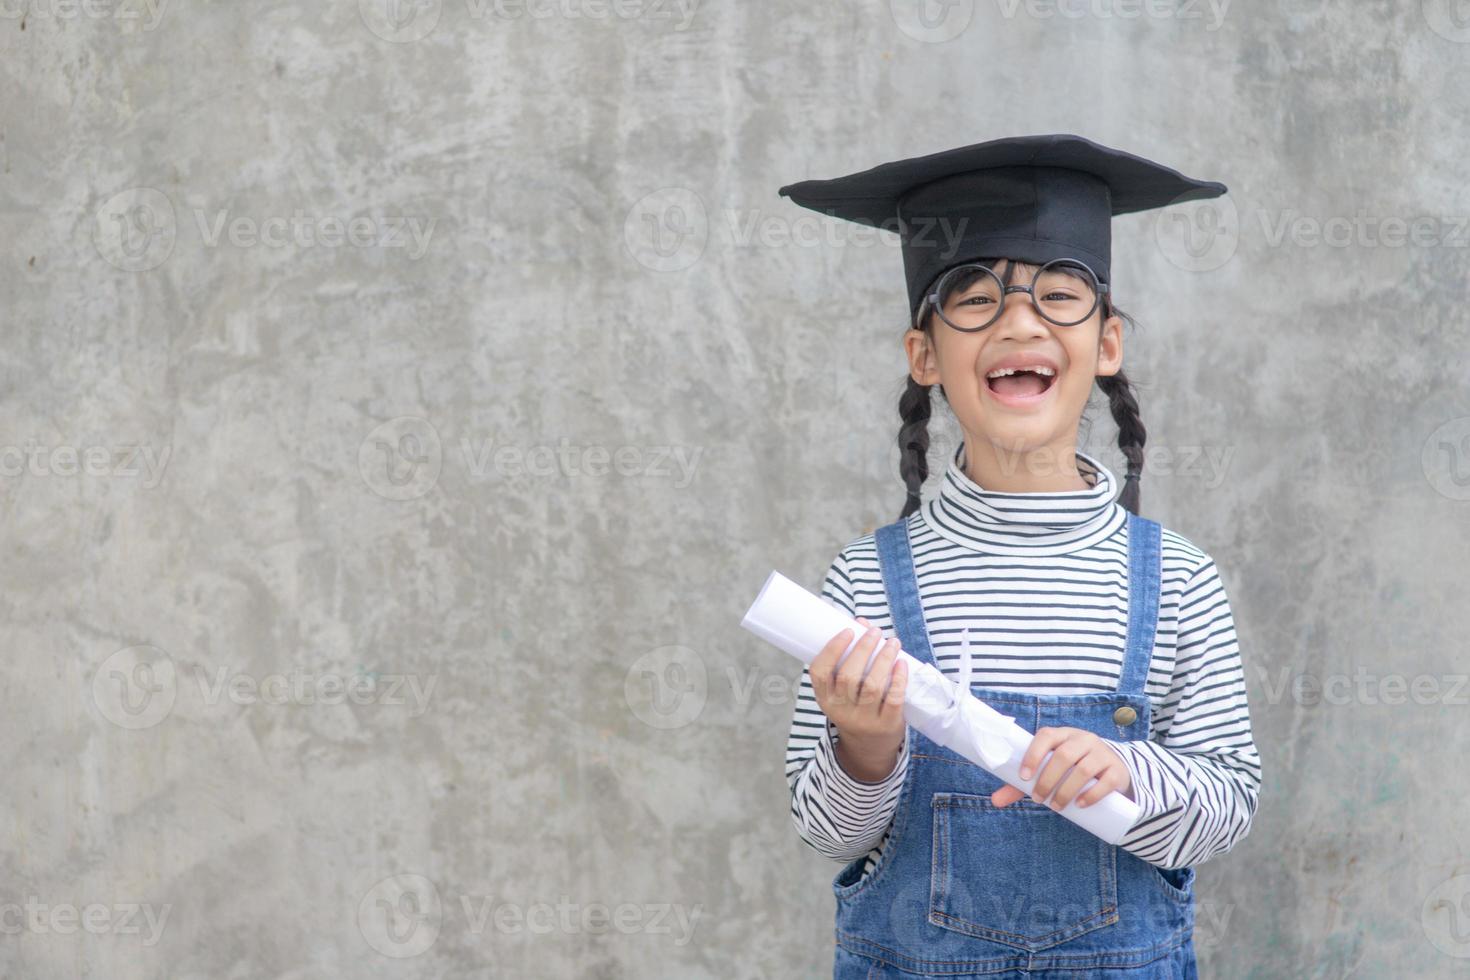 heureux écolier asiatique diplômé en chapeau de graduation photo